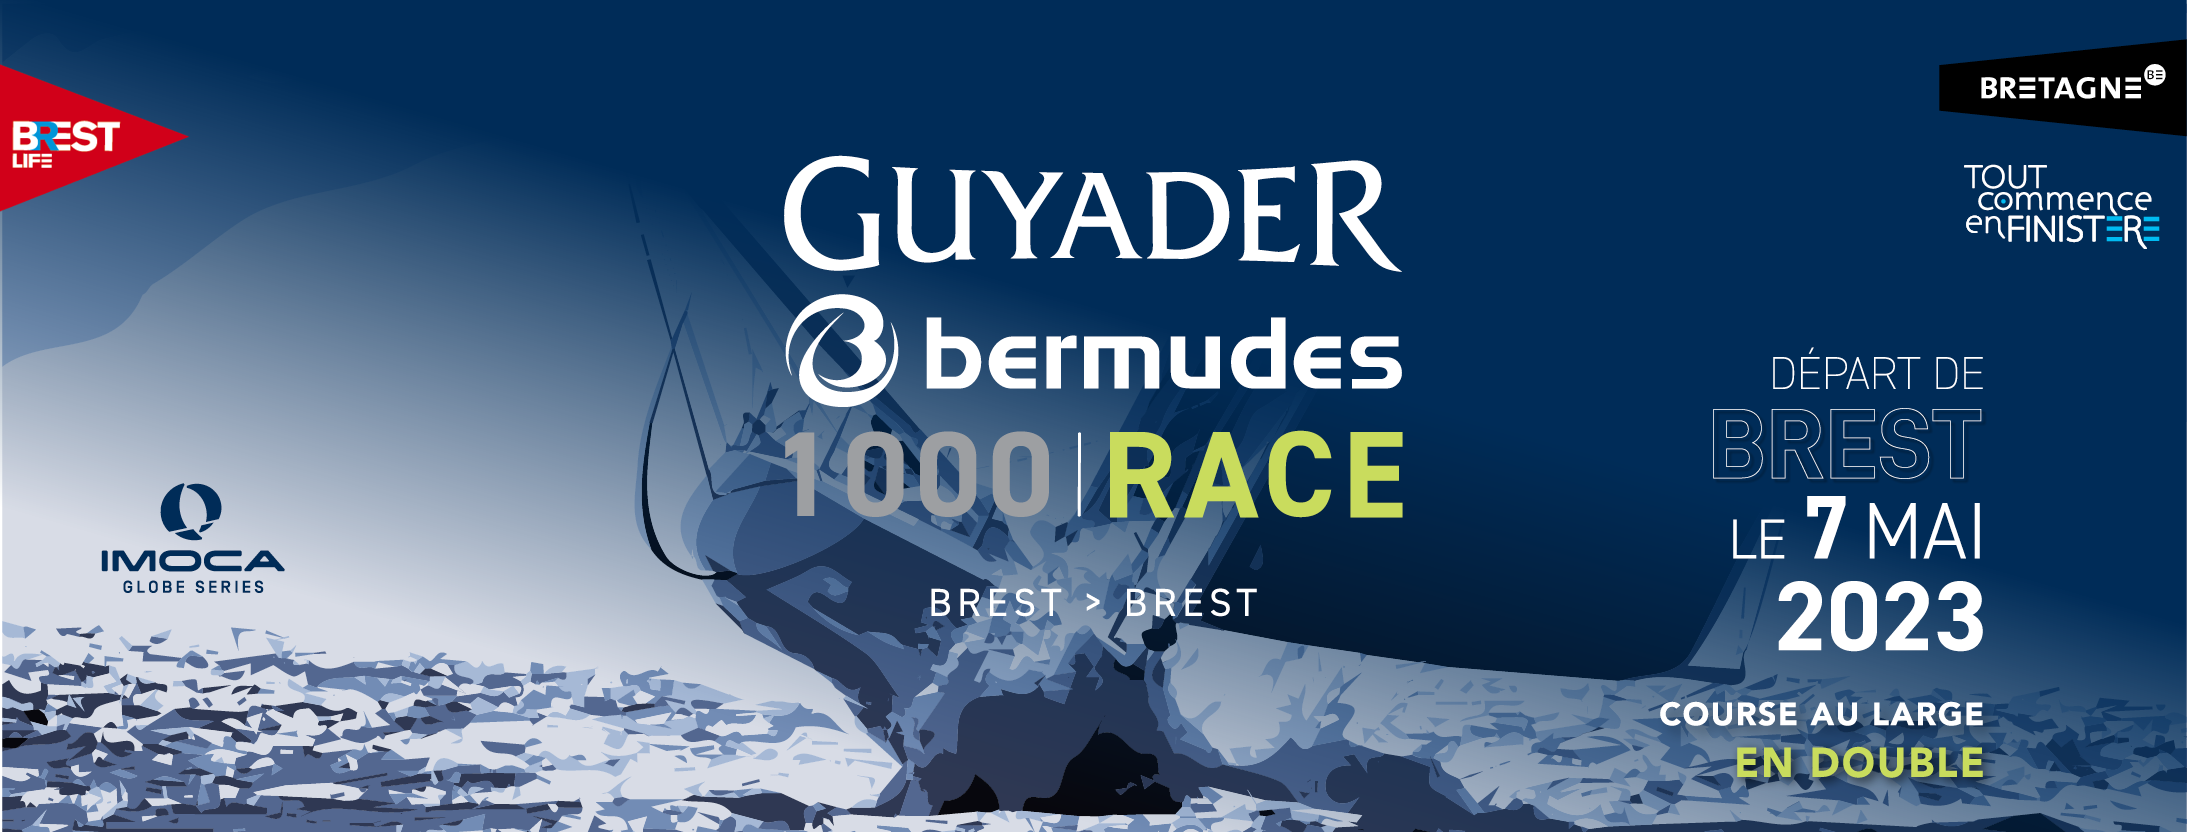 Guyader Bermudes 1000 Race : Assistance technique avant départ